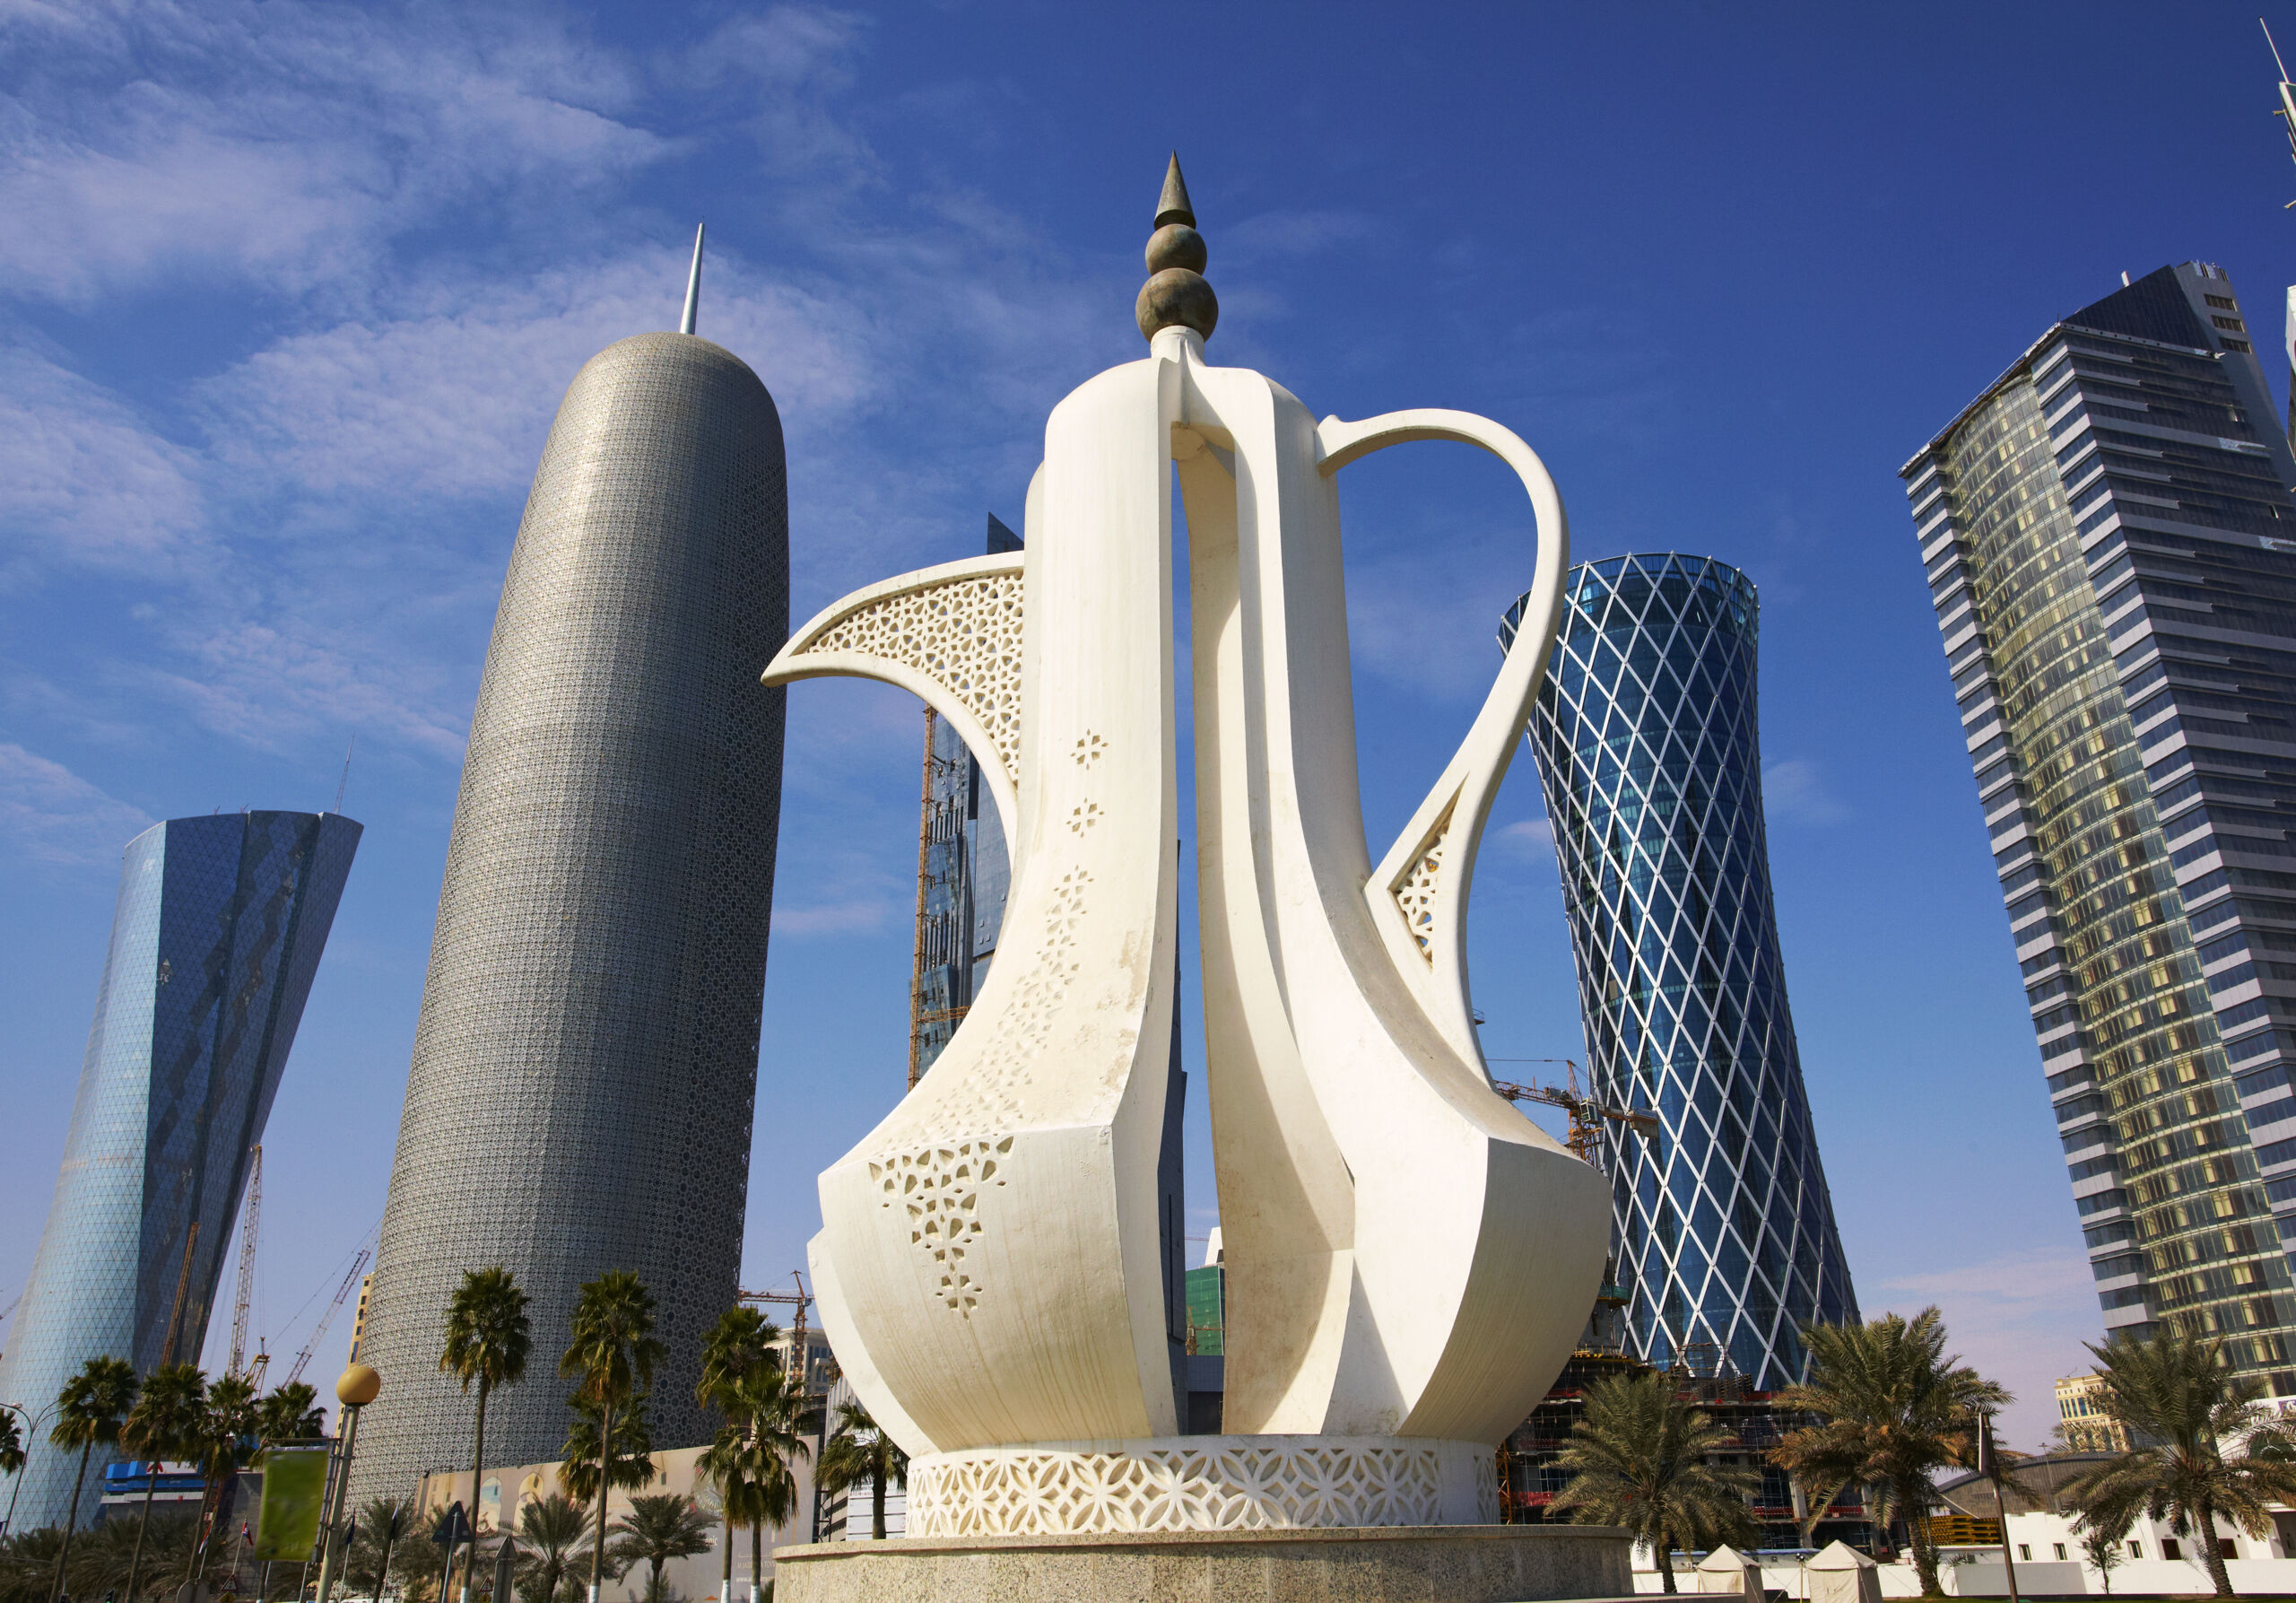 qatar tourism revenue